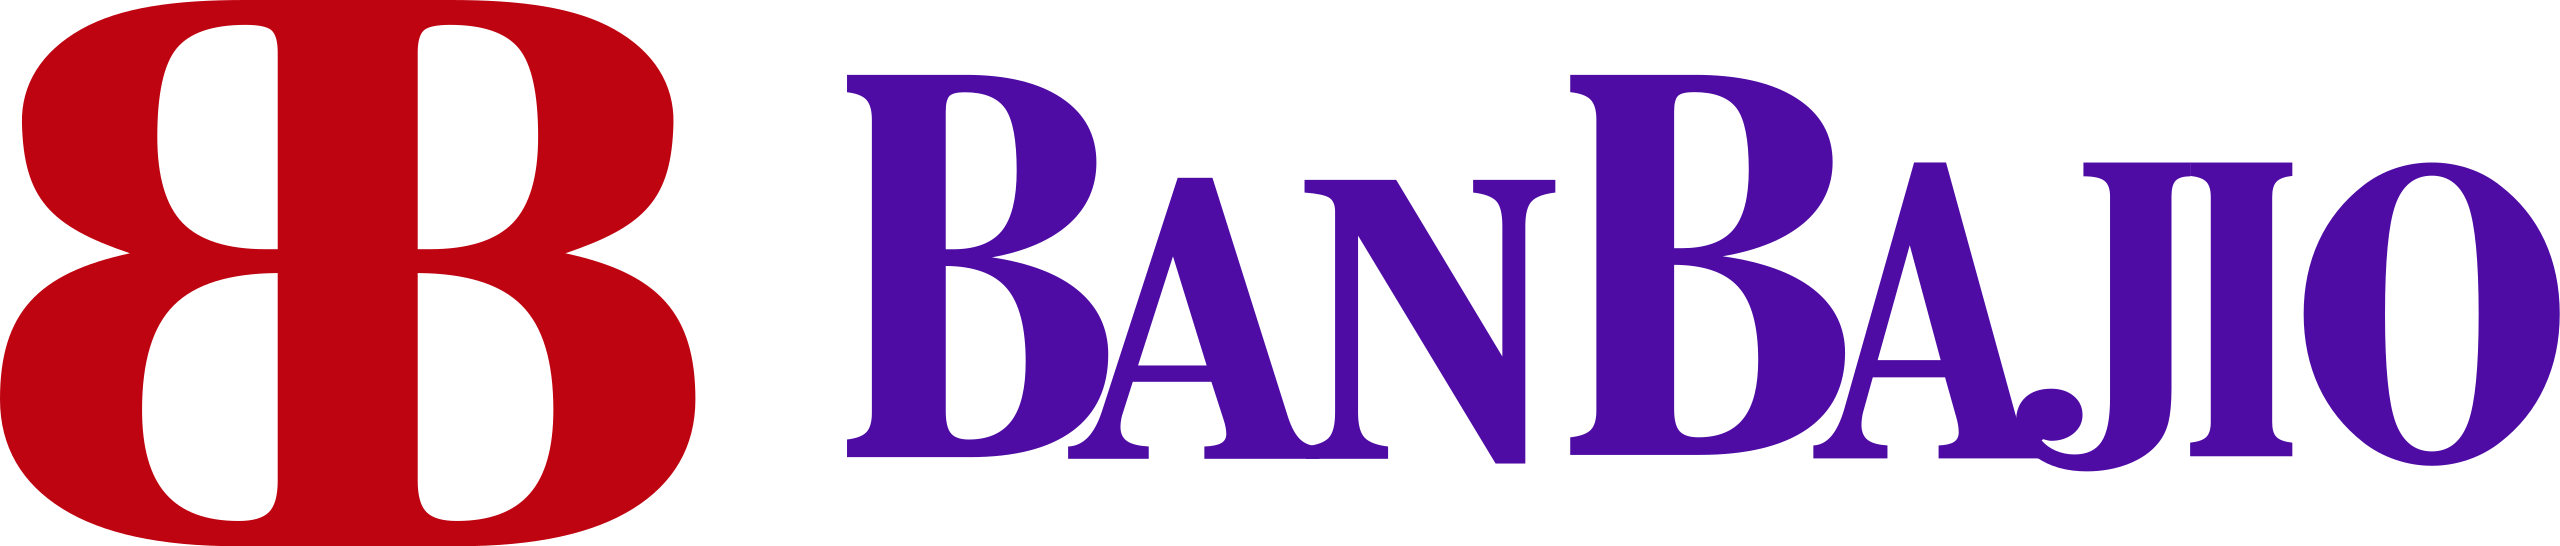 Banco Banjio